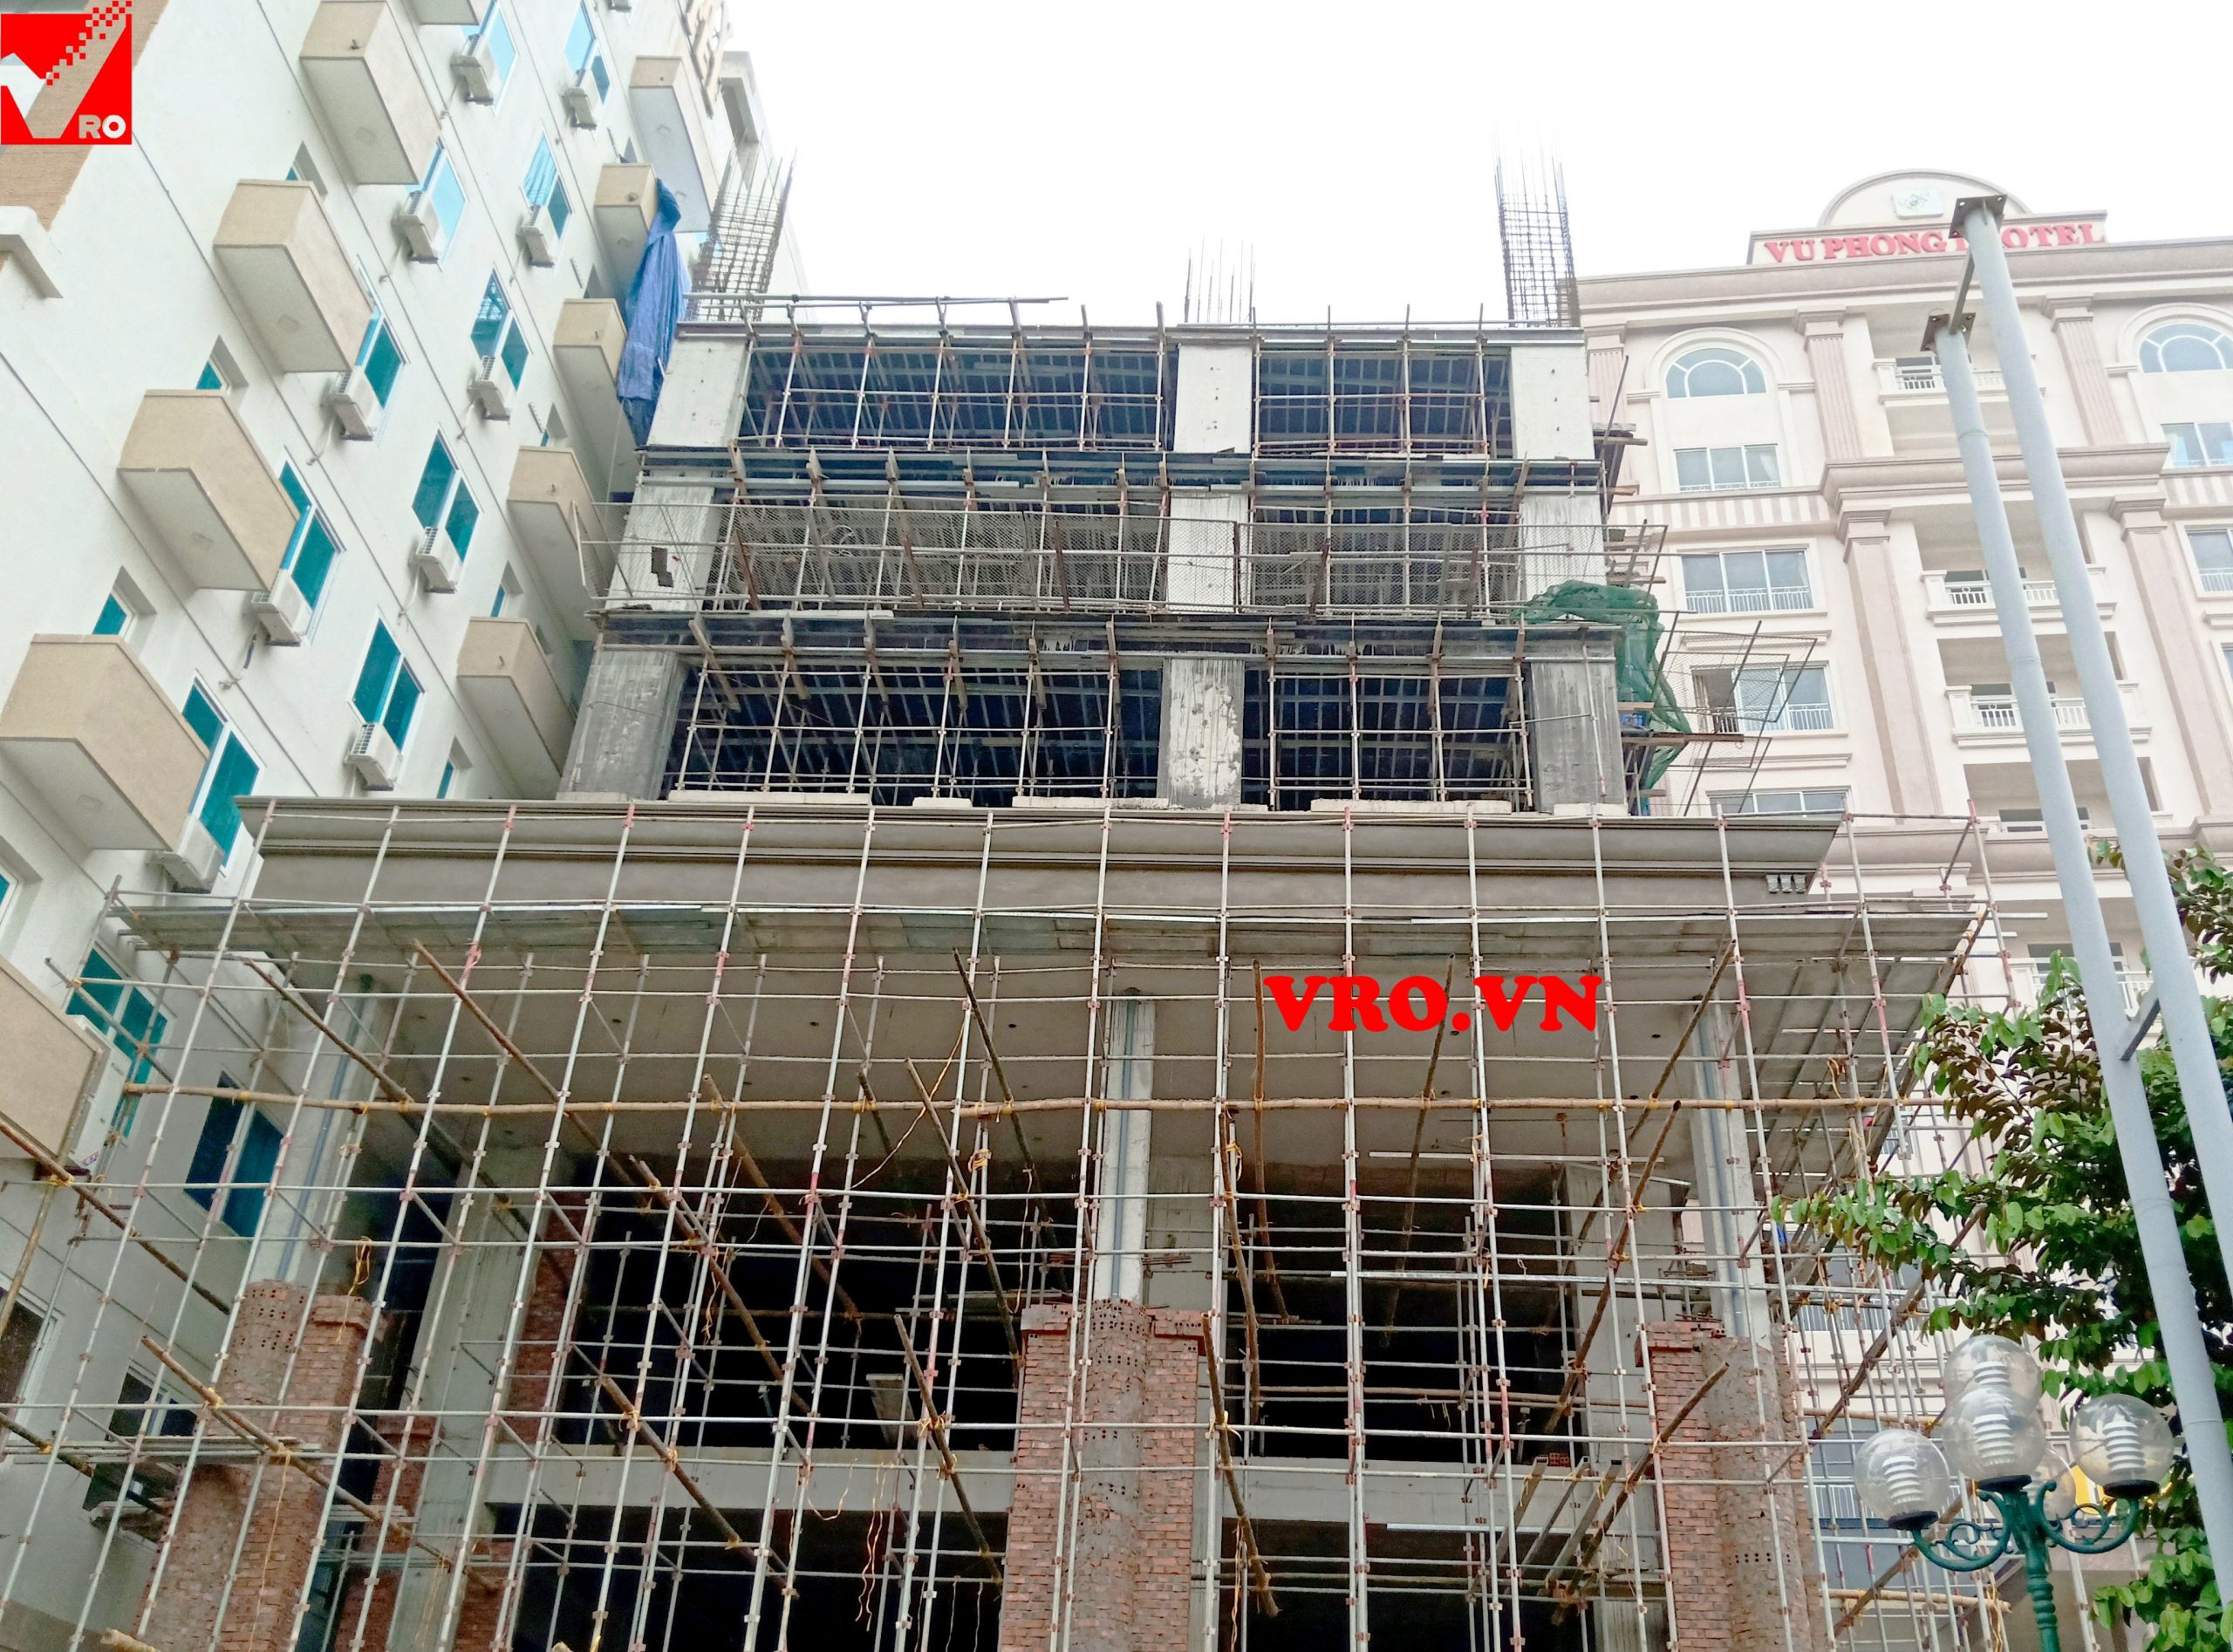 Thi công và hoàn thiện sàn xốp cho khách sạn Long Thành - Thanh Hóa